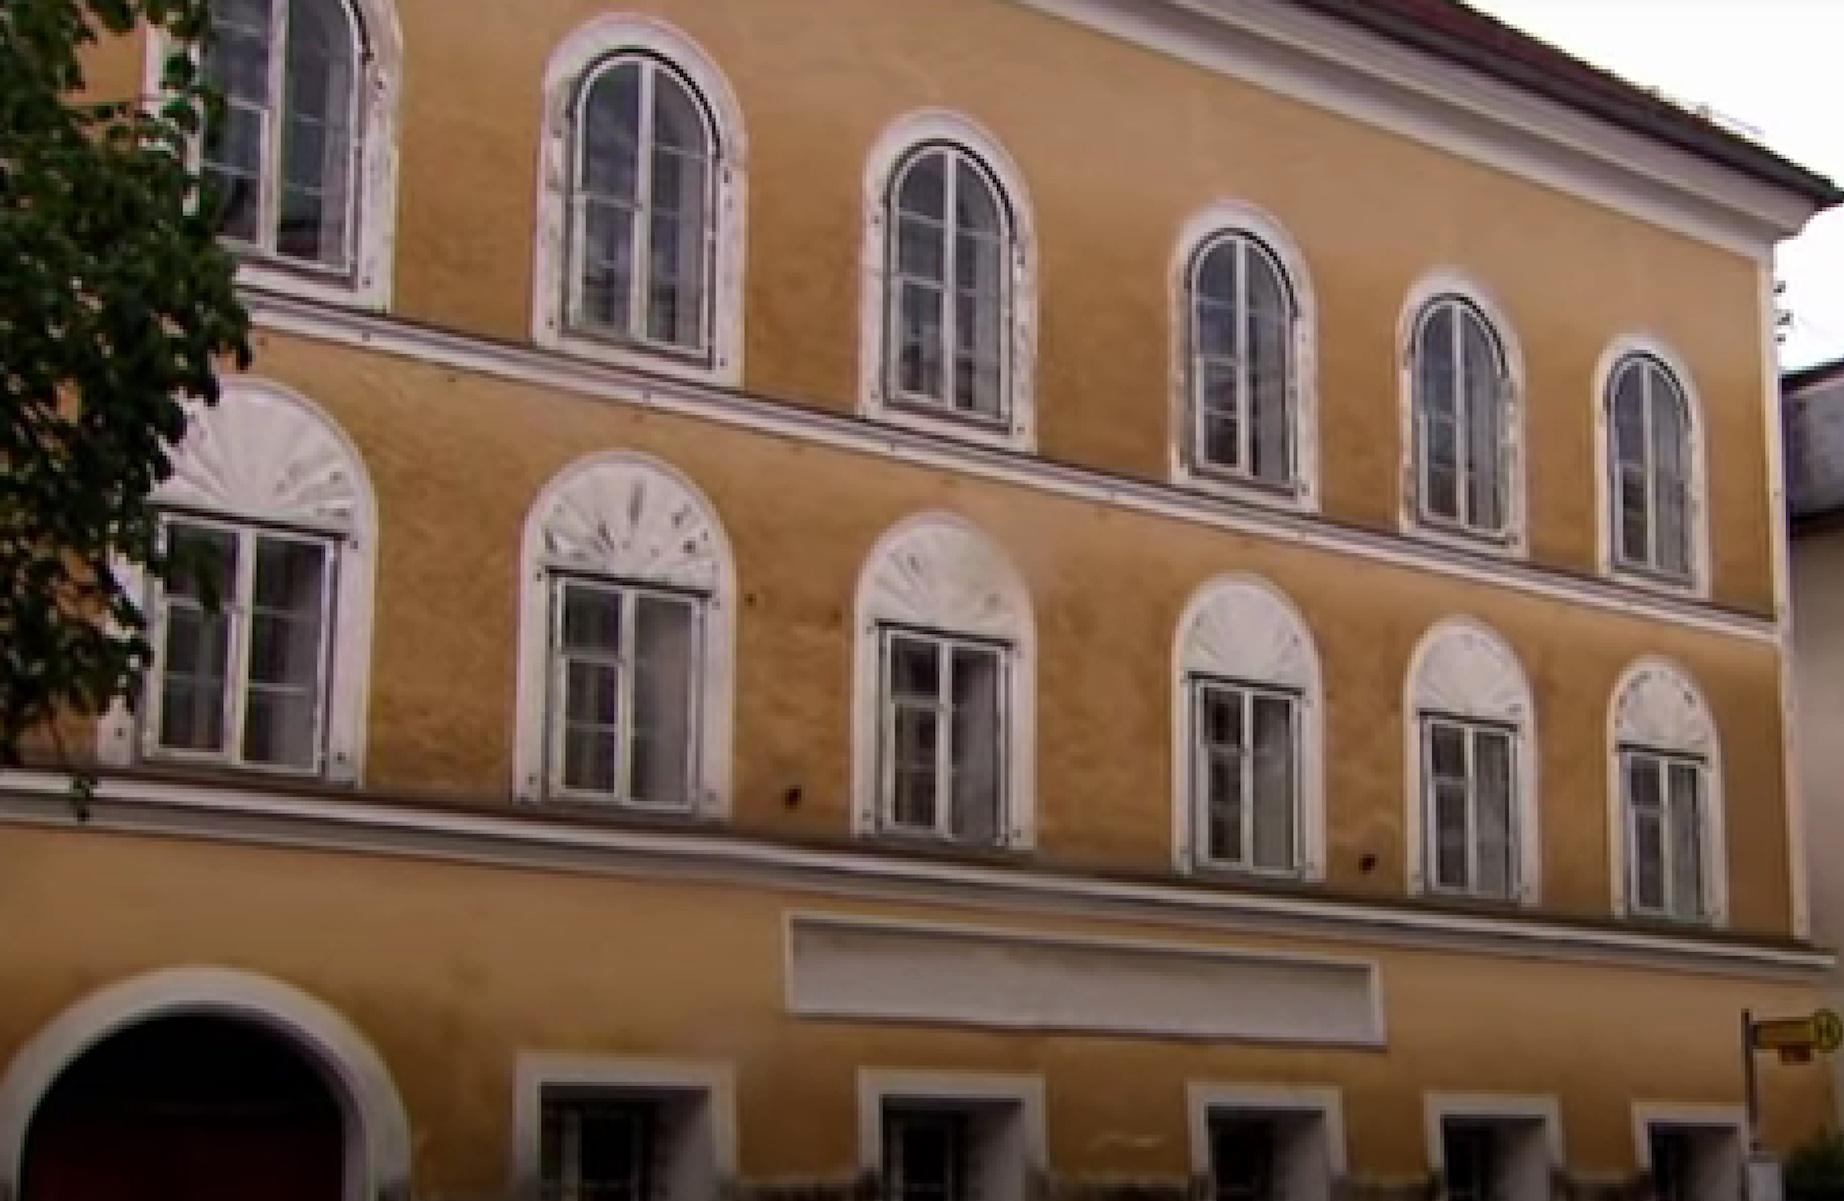 Αδόλφος Χίτλερ: Αστυνομικό τμήμα το σπίτι που γεννήθηκε ο διαβόητος δικτάτορας στην Αυστρία